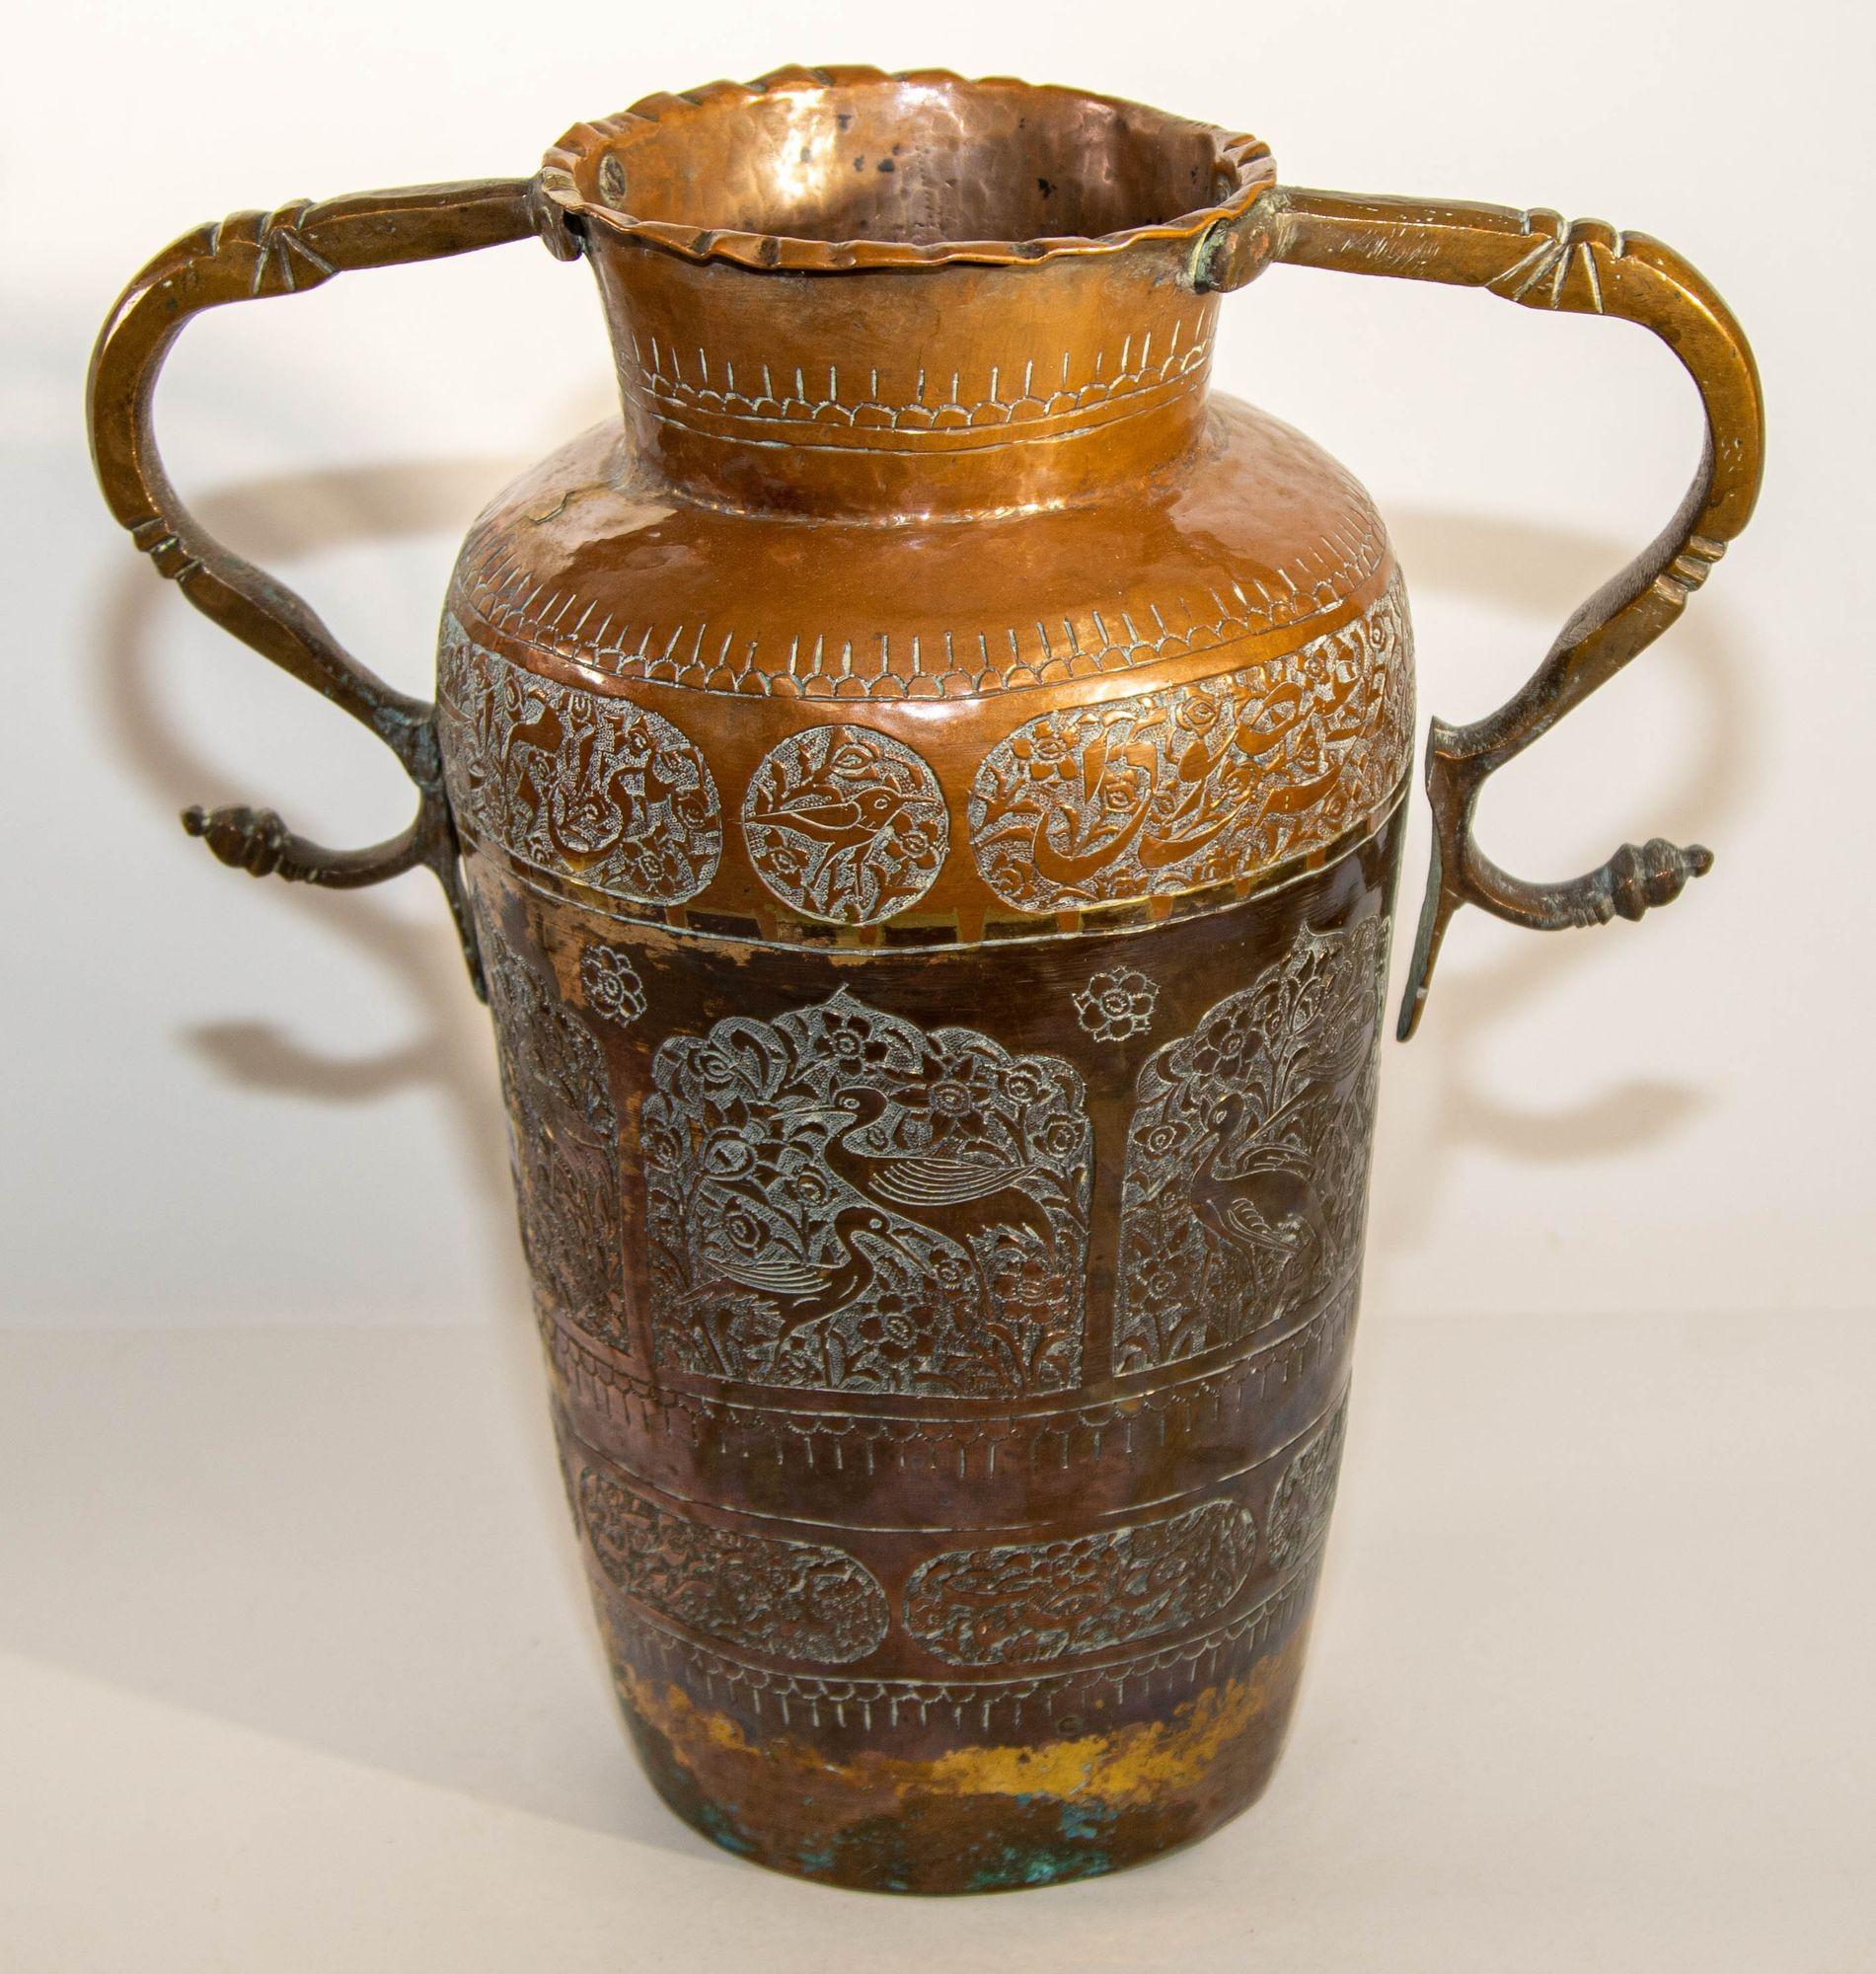 Vase en cuivre islamique du Moyen Orient du 19e siècle avec des anses en forme de serpent.
Grand vase islamique asiatique en cuivre avec un motif floral traditionnel islamique mauresque en relief et une écriture arabe, un médaillon avec des oiseaux